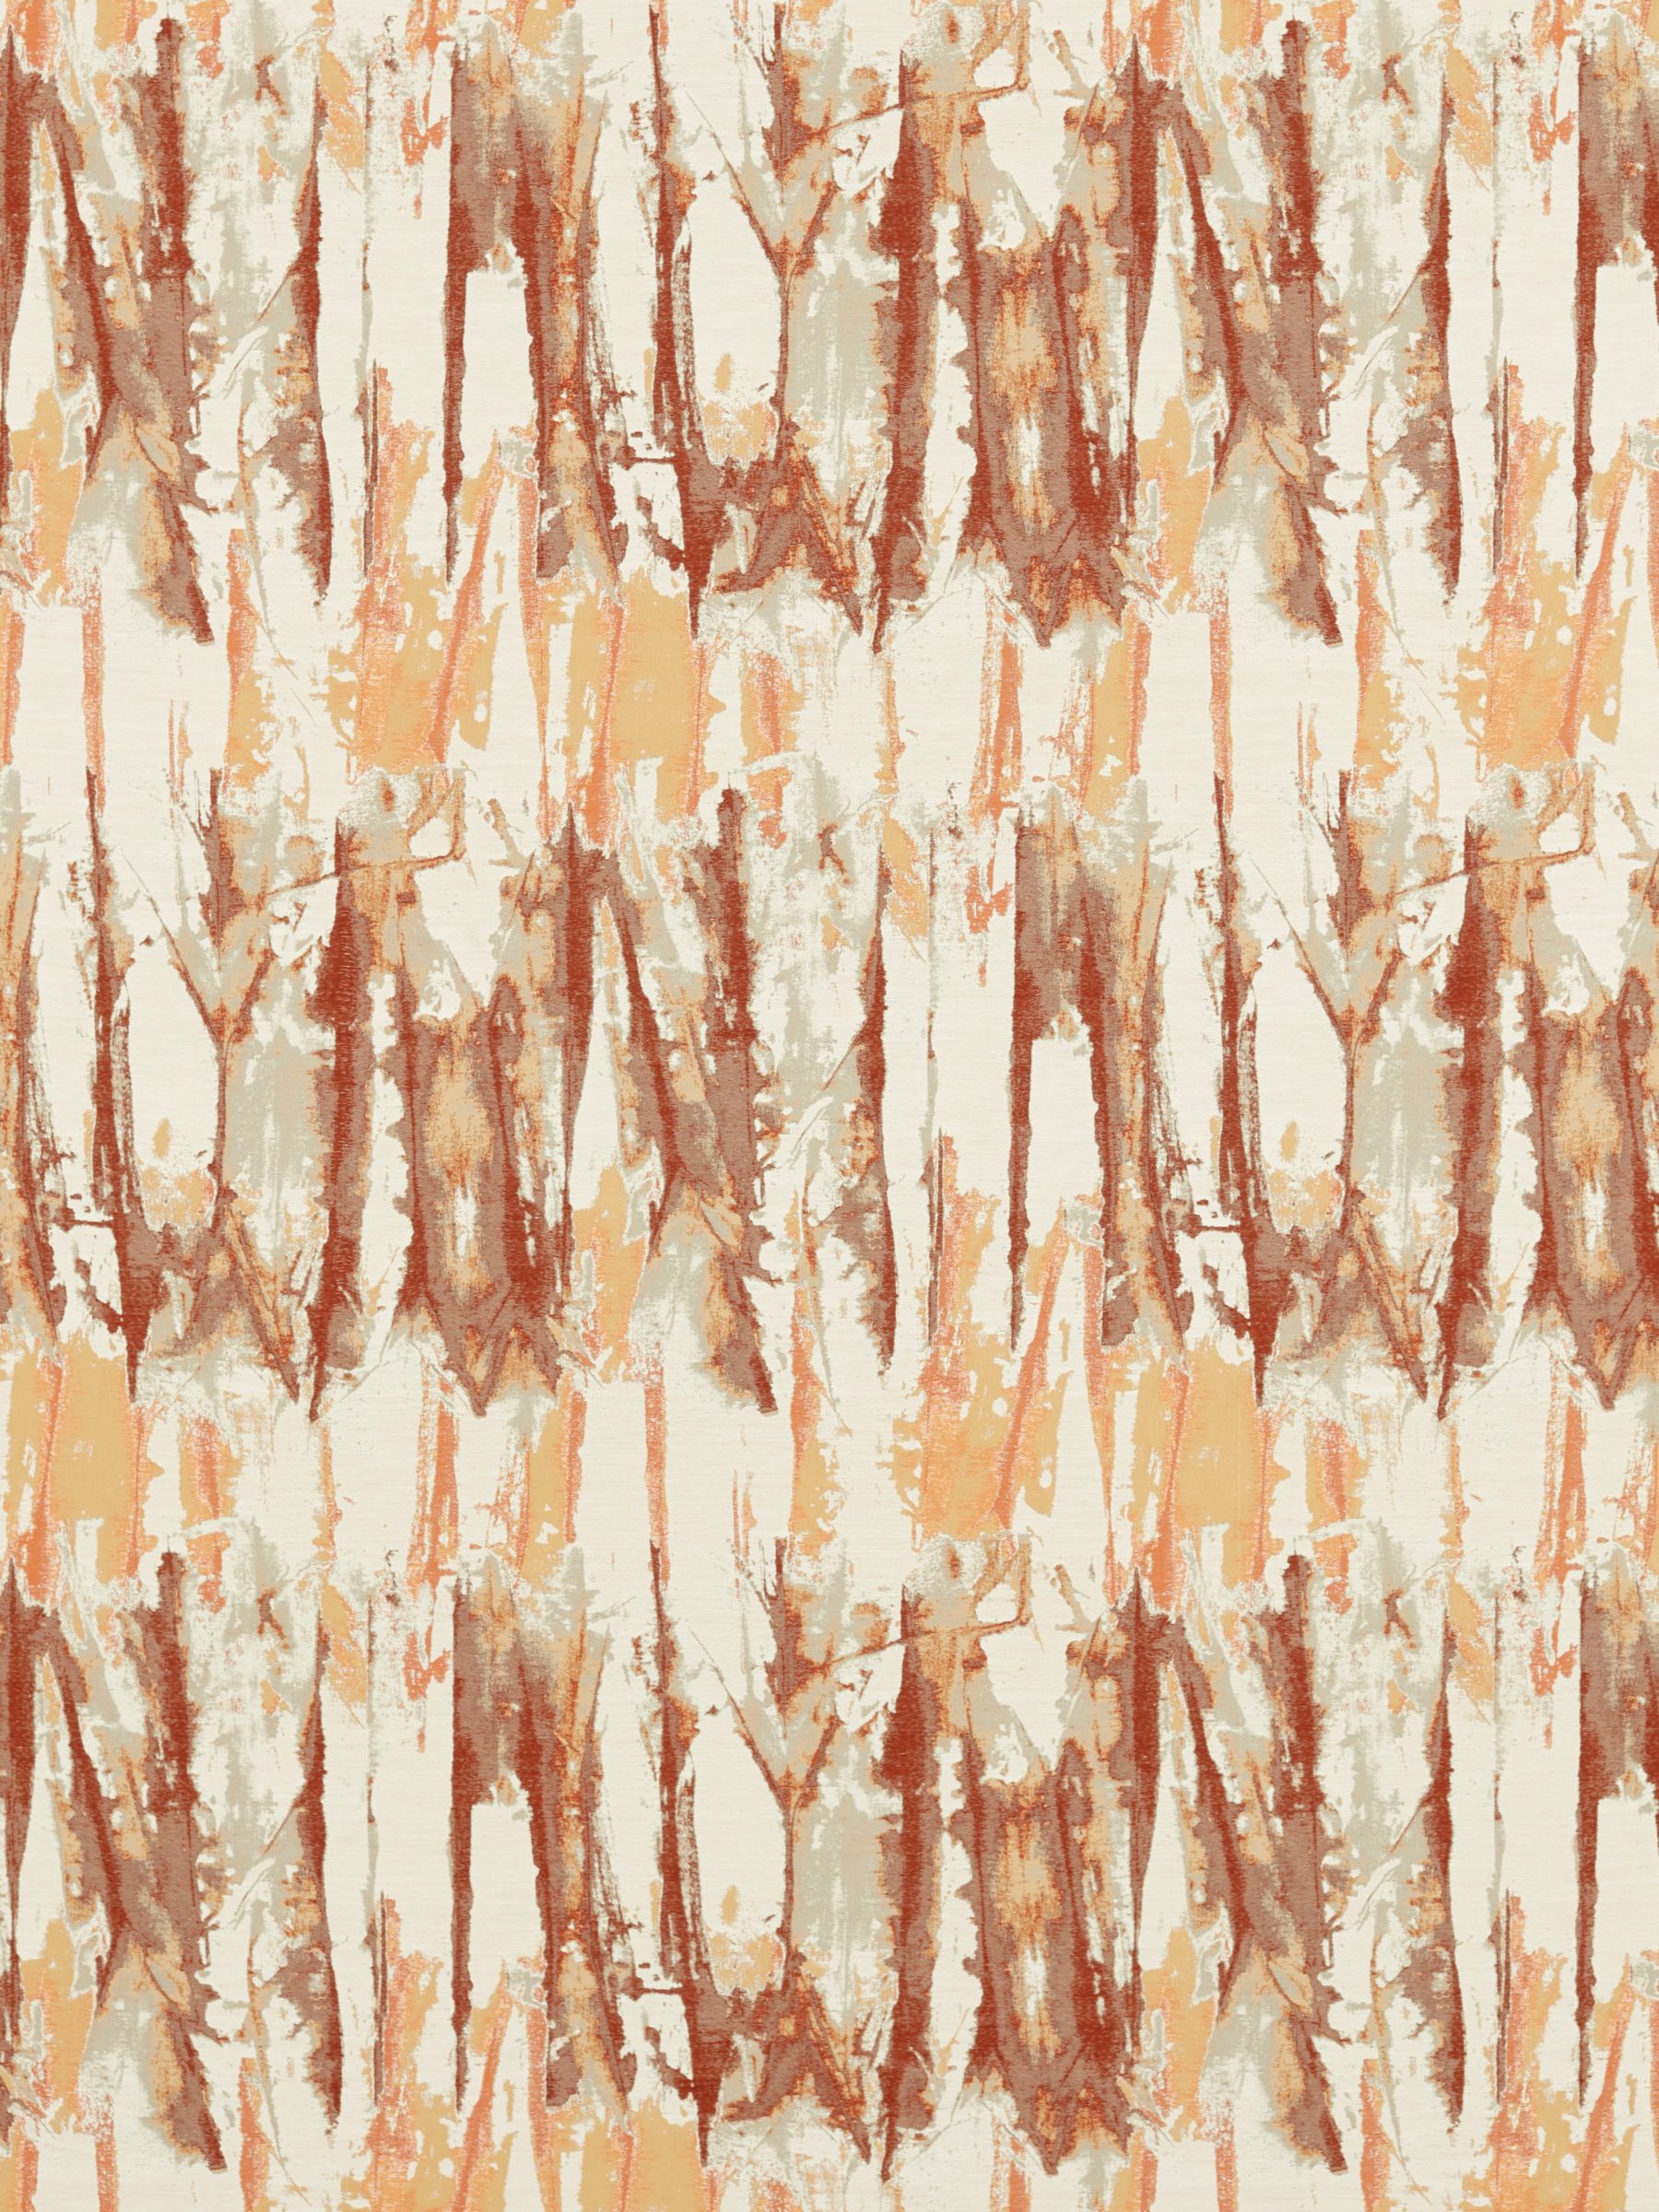 Harlequin Eco Takara Furnishing Fabric, Baked Terracotta/Rust